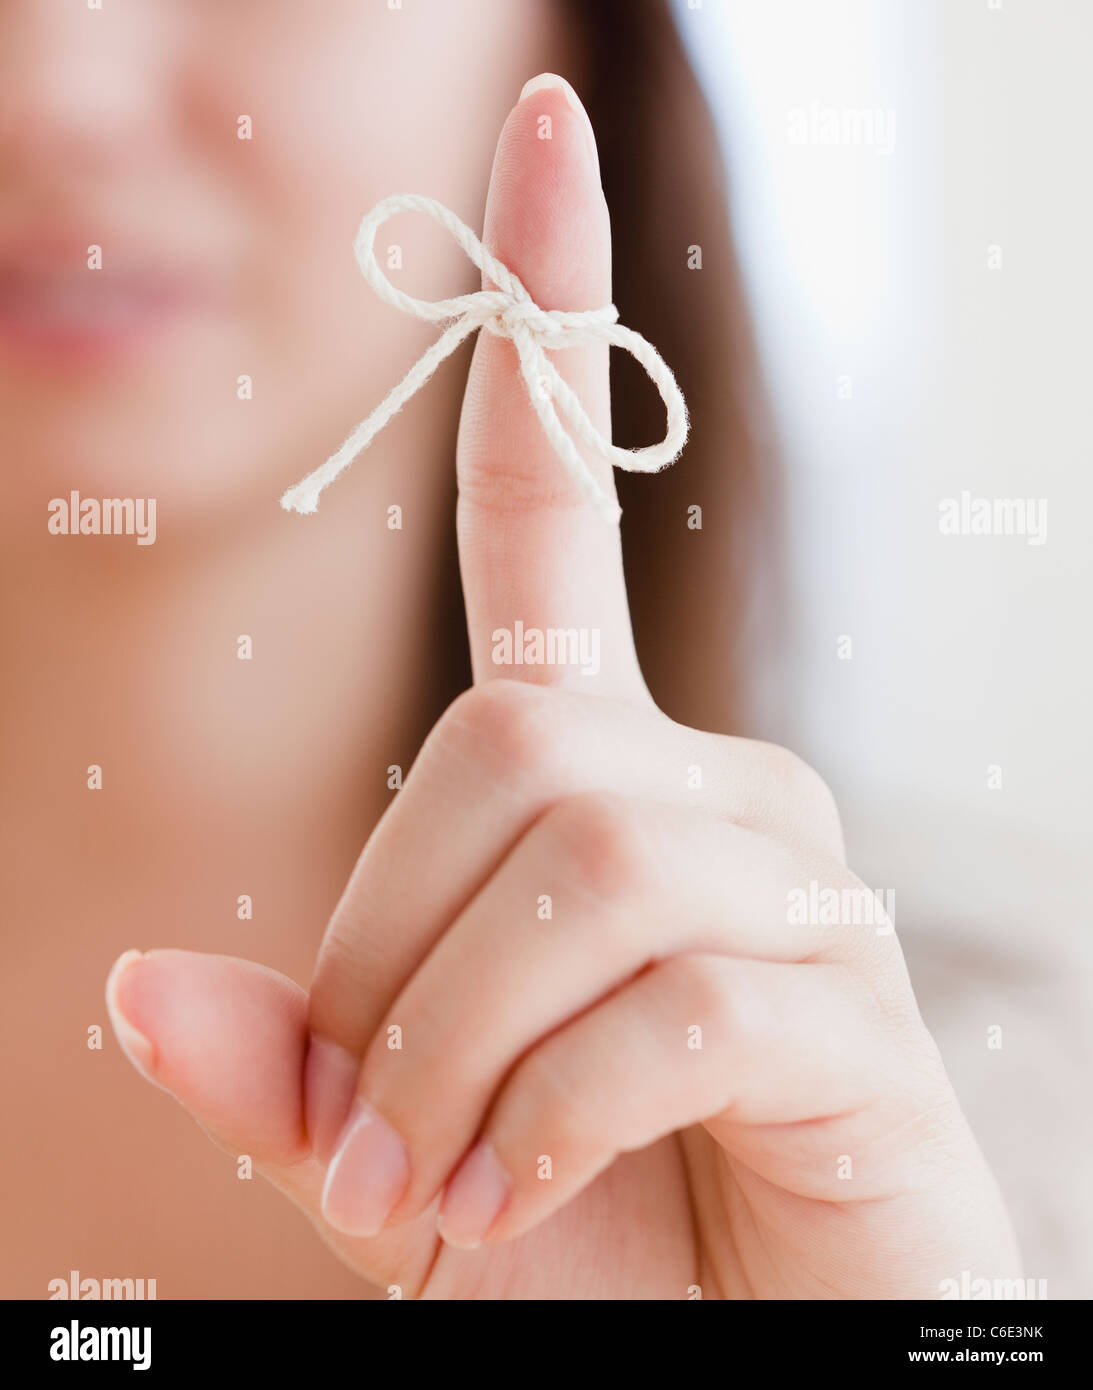 USA, New Jersey, Jersey City, Close up of woman's finger avec nœud lié Banque D'Images